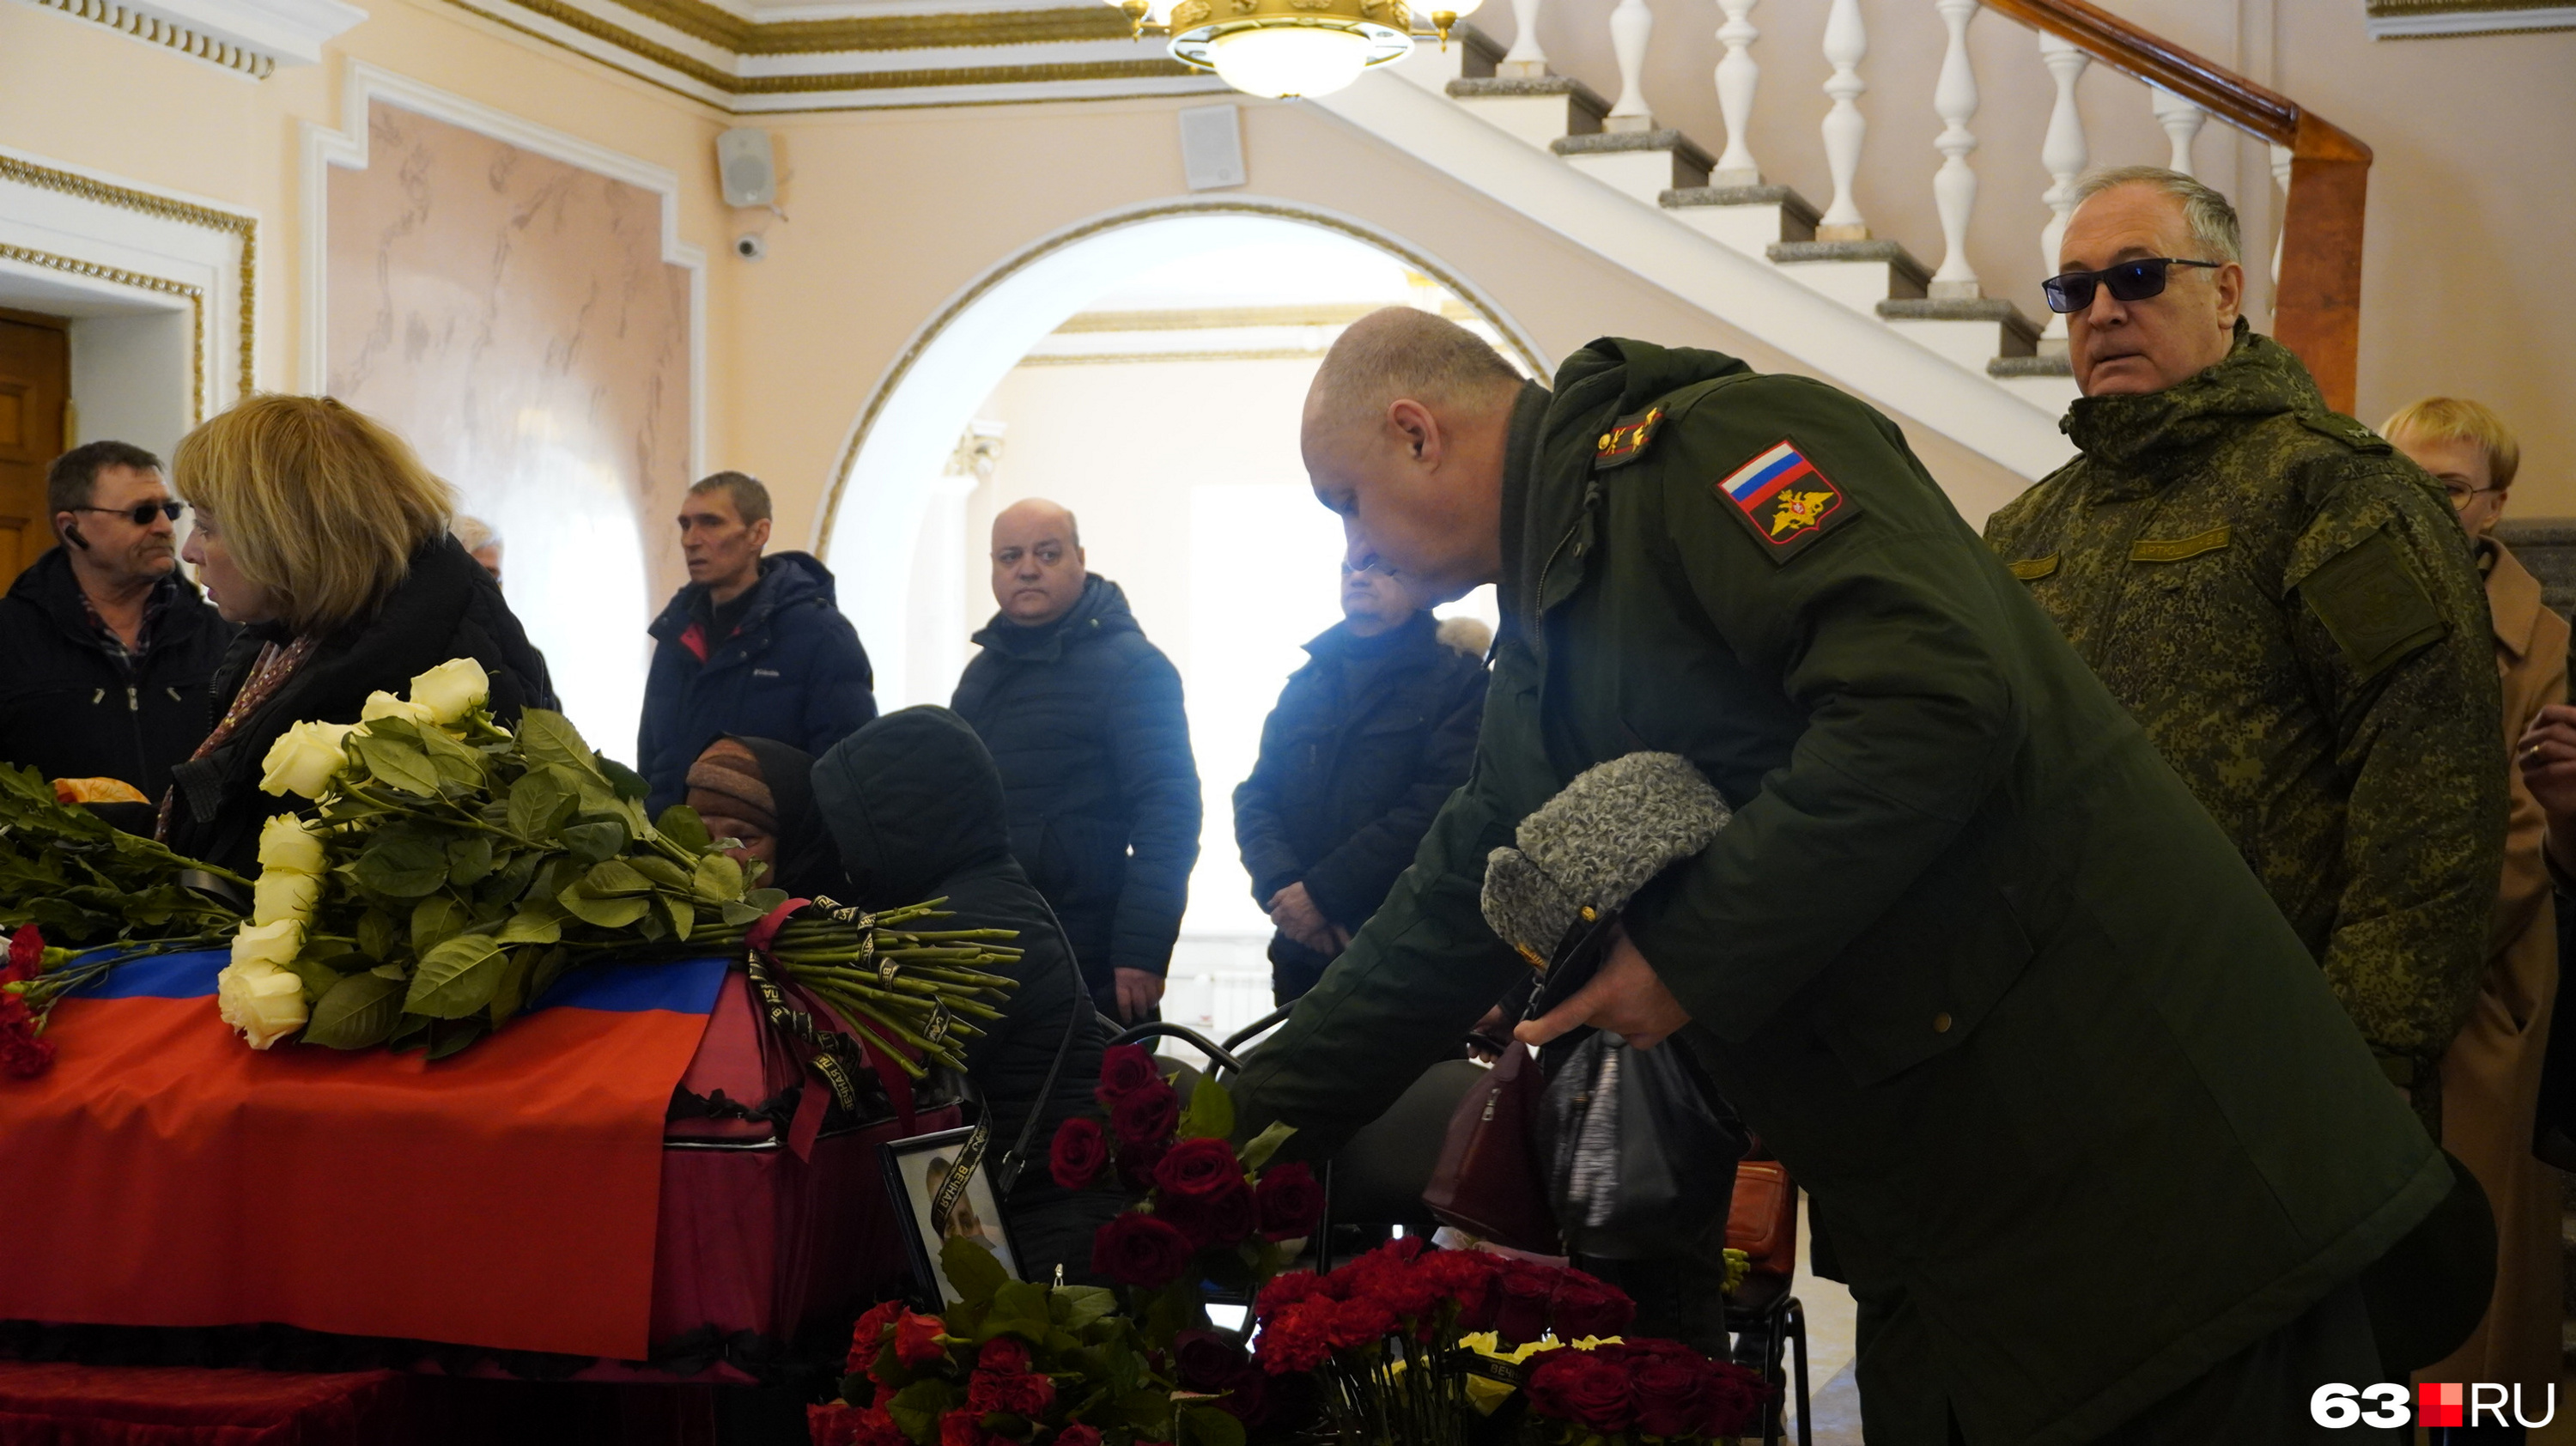 Похороны военнослужащего. Похороны военнослужащего погибшего на Украине 2022.